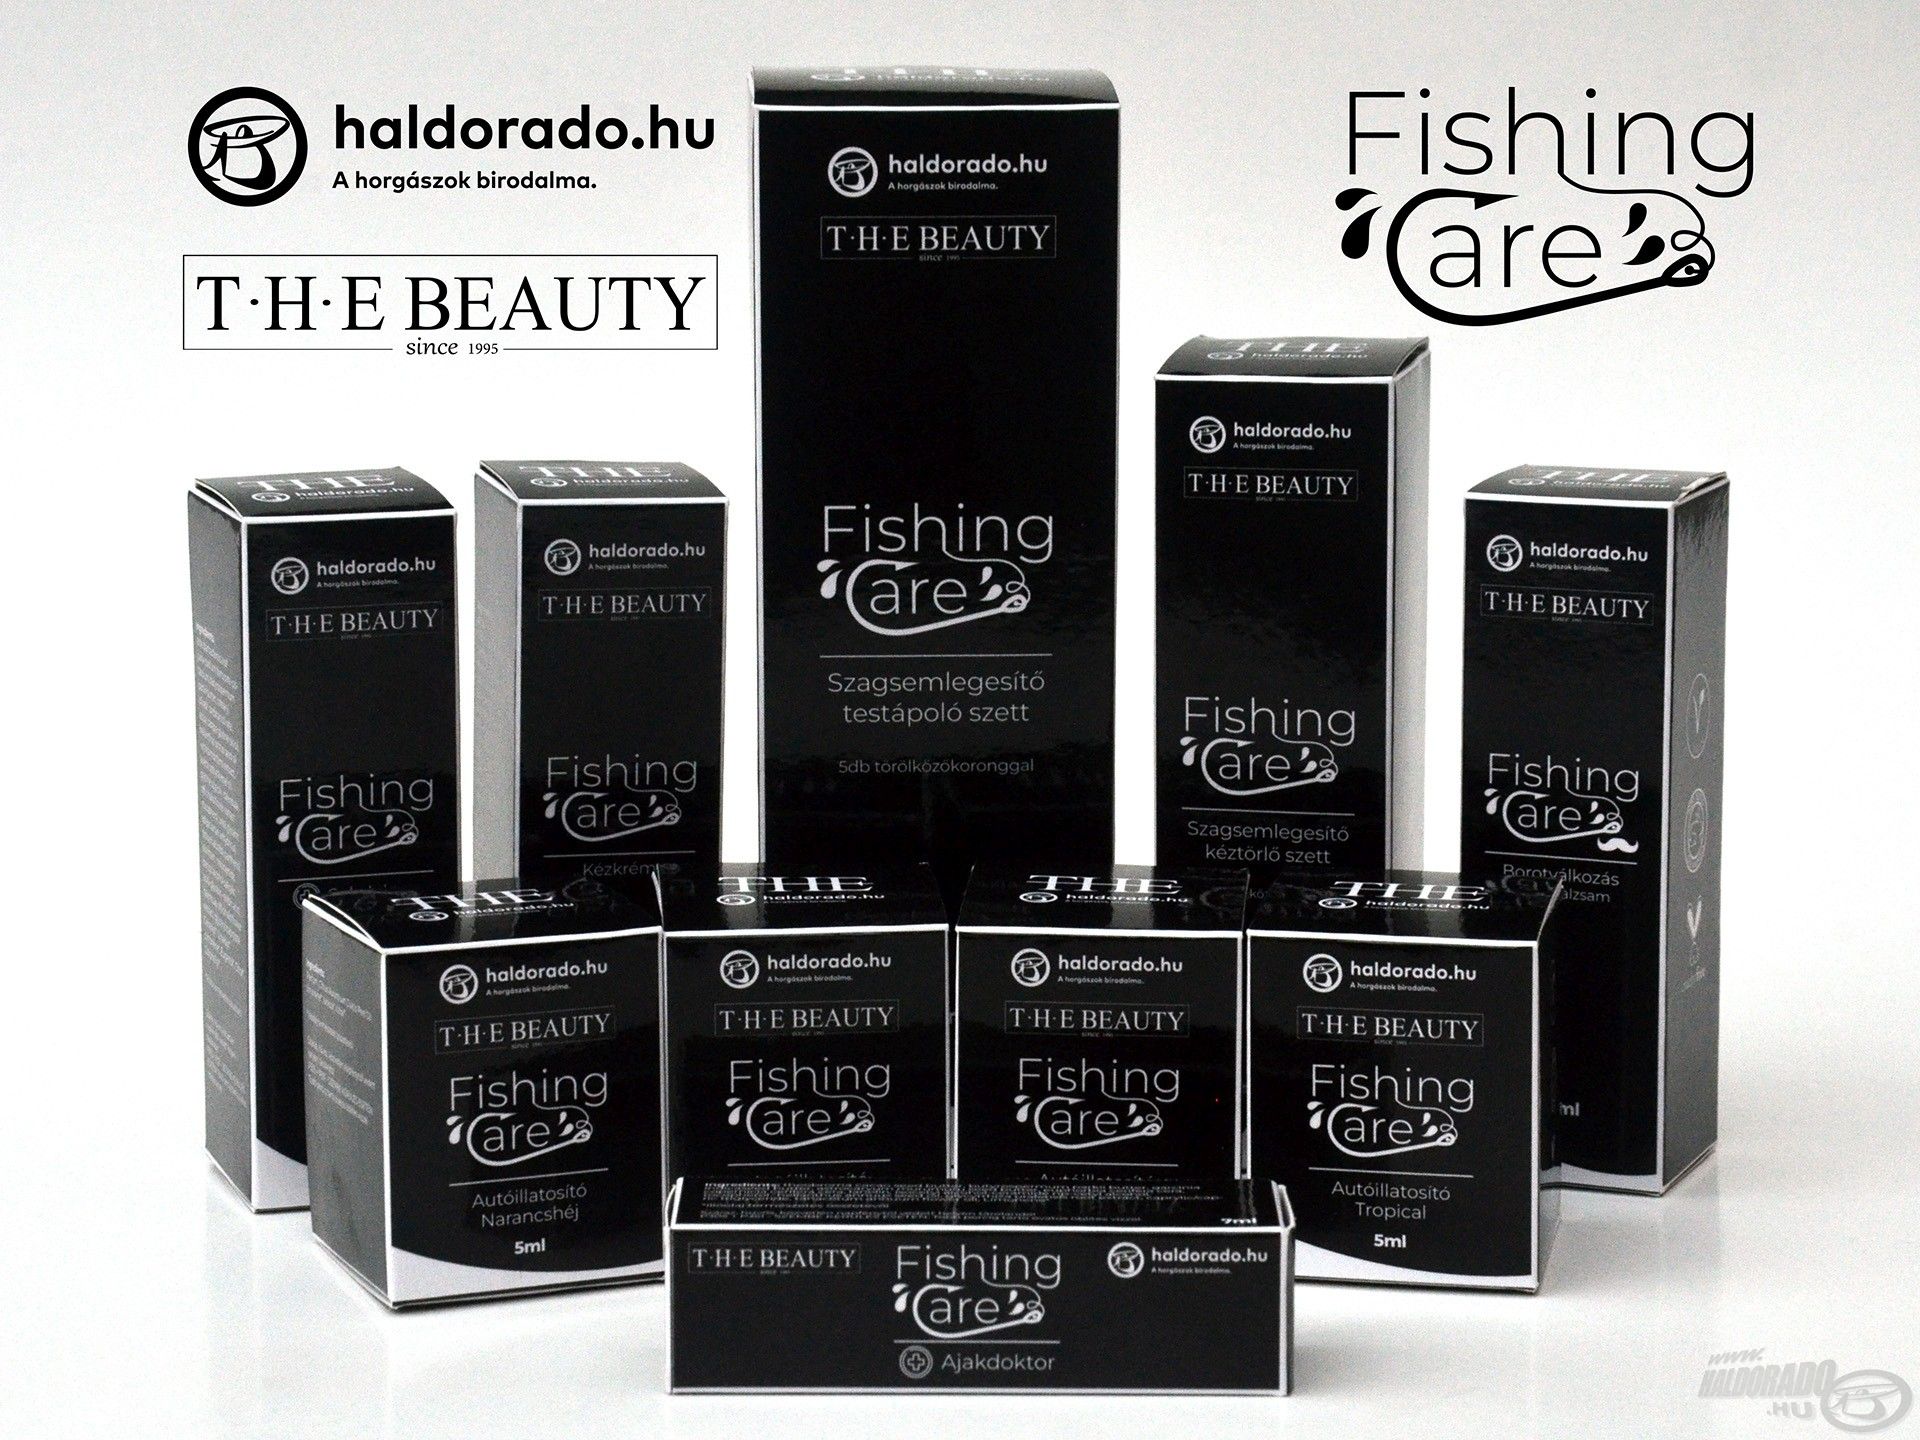 Ízléses csomagolás és kompromisszummentes minőség jellemzi a Fishing Care kozmetikumokat